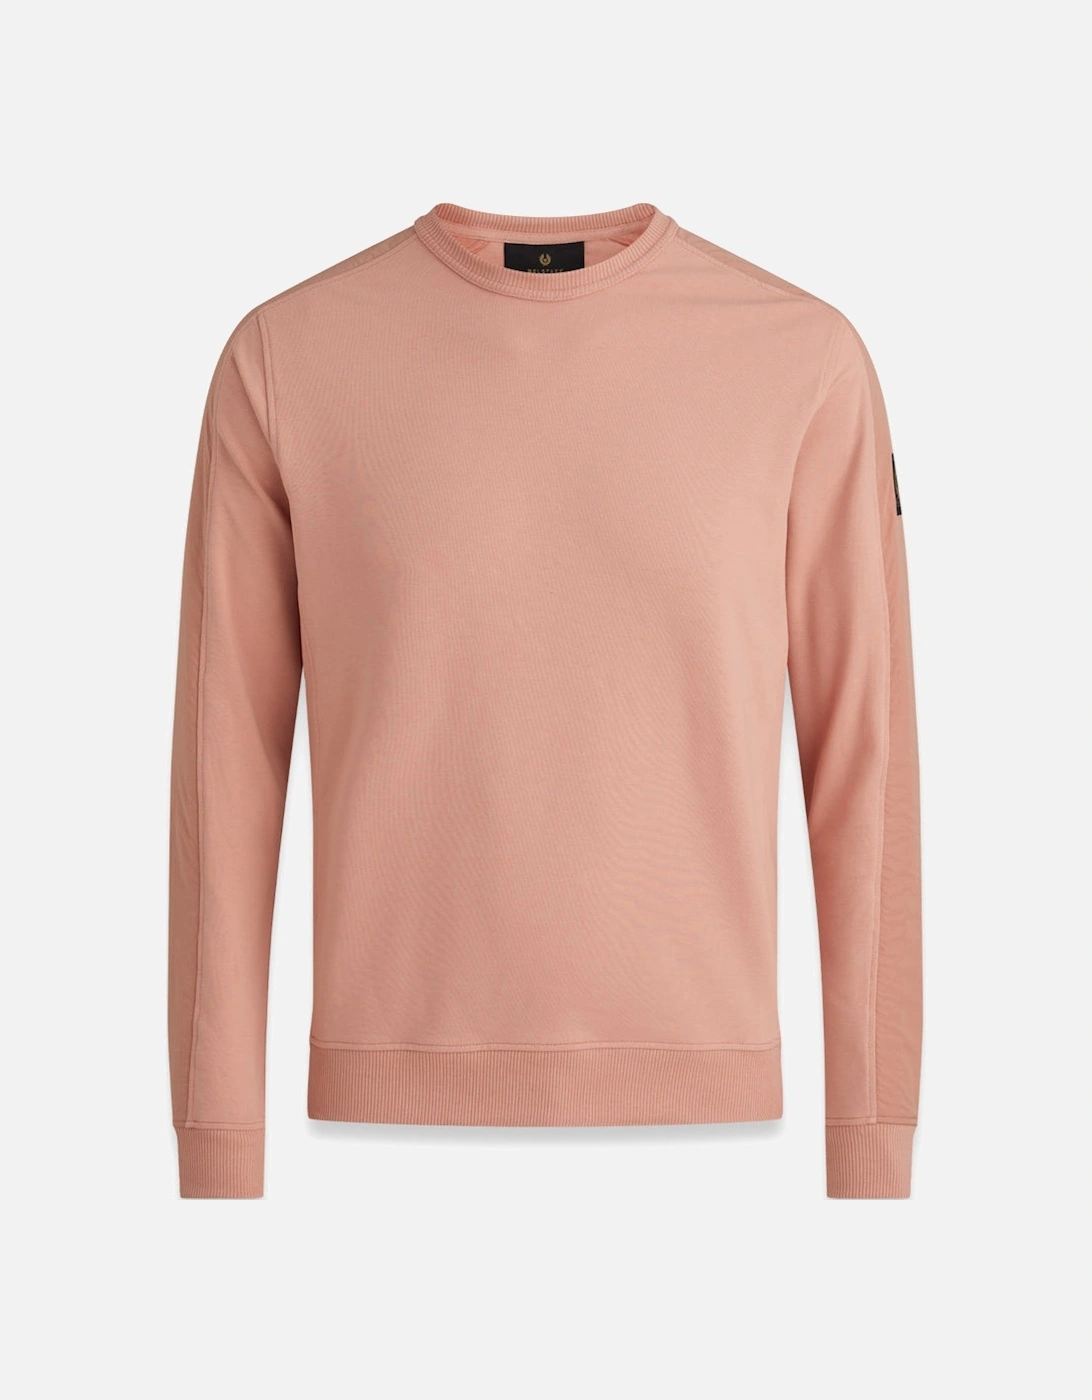 Transit Sweatshirt Rust Pink, 2 of 1